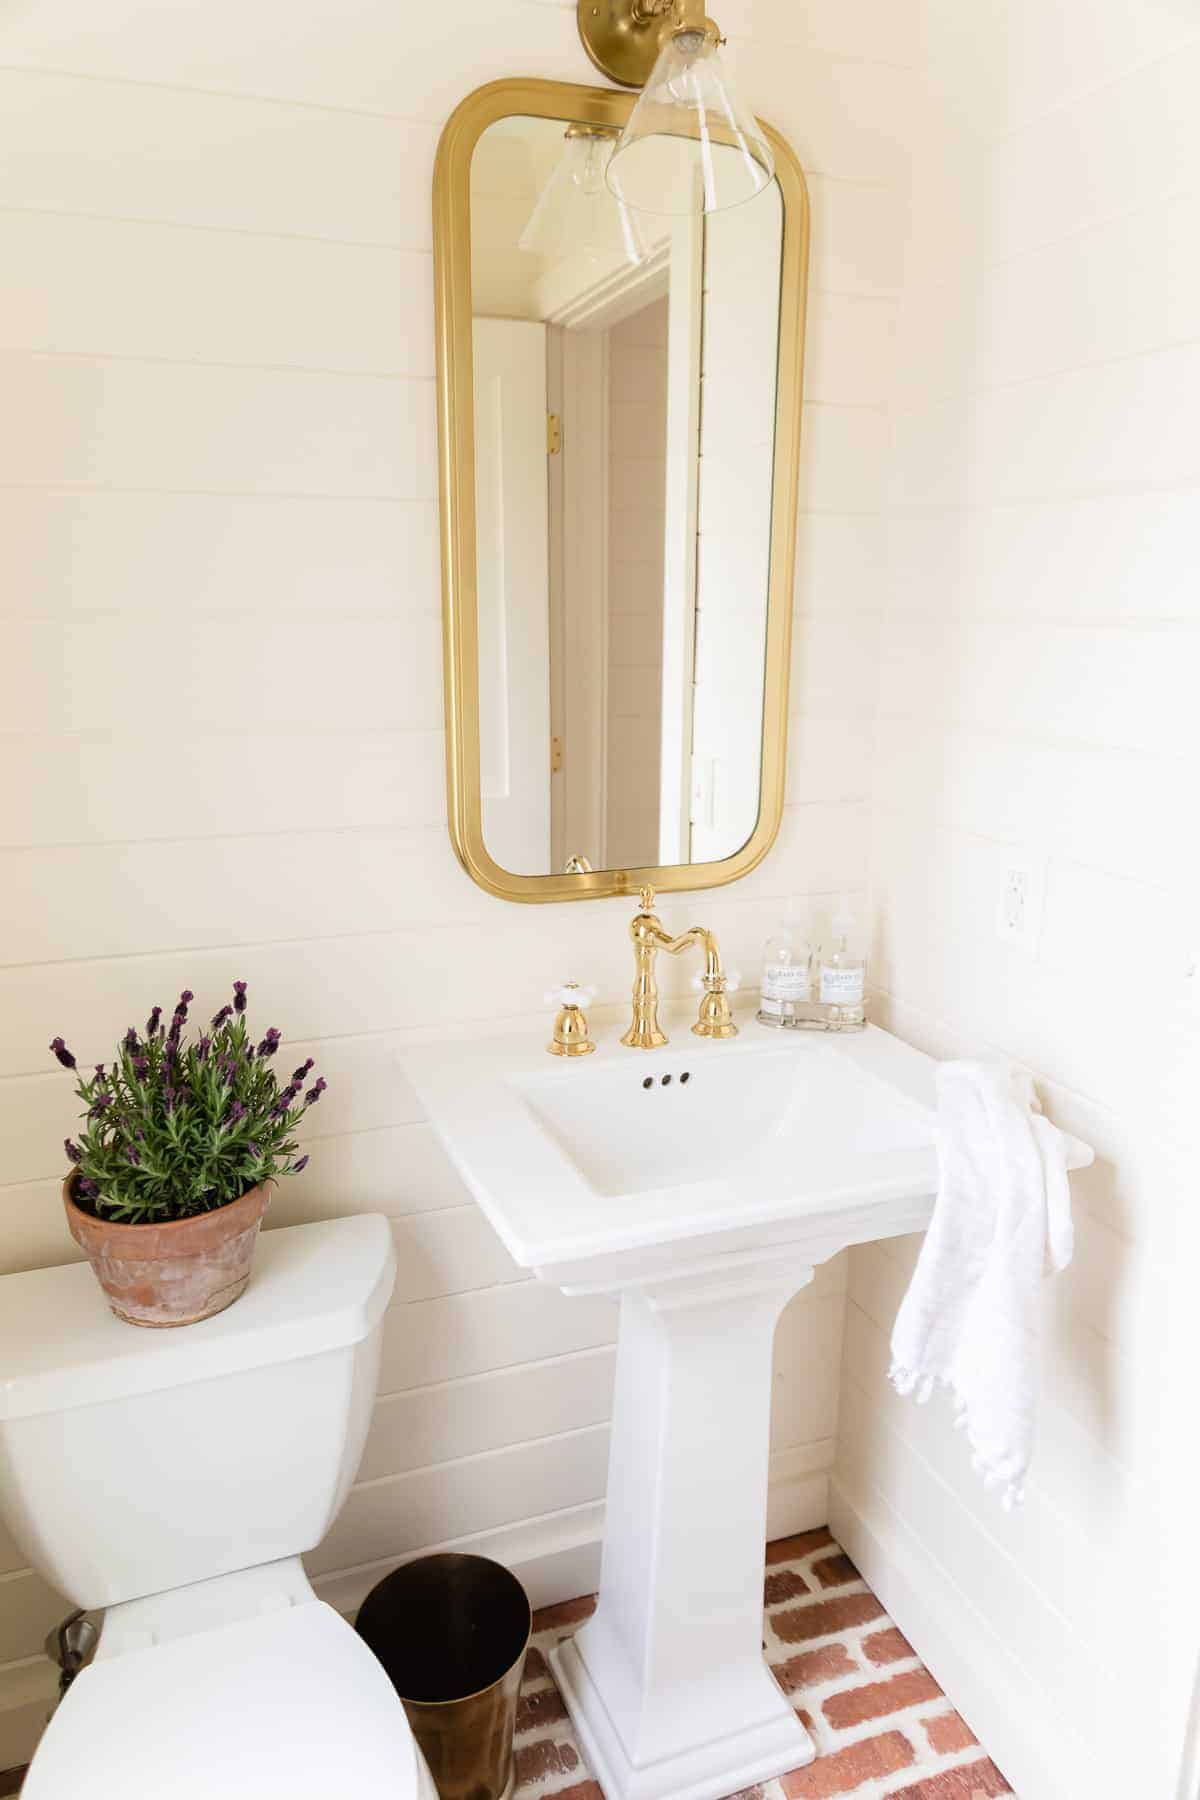 黄铜烛台在浴室镜子,水槽